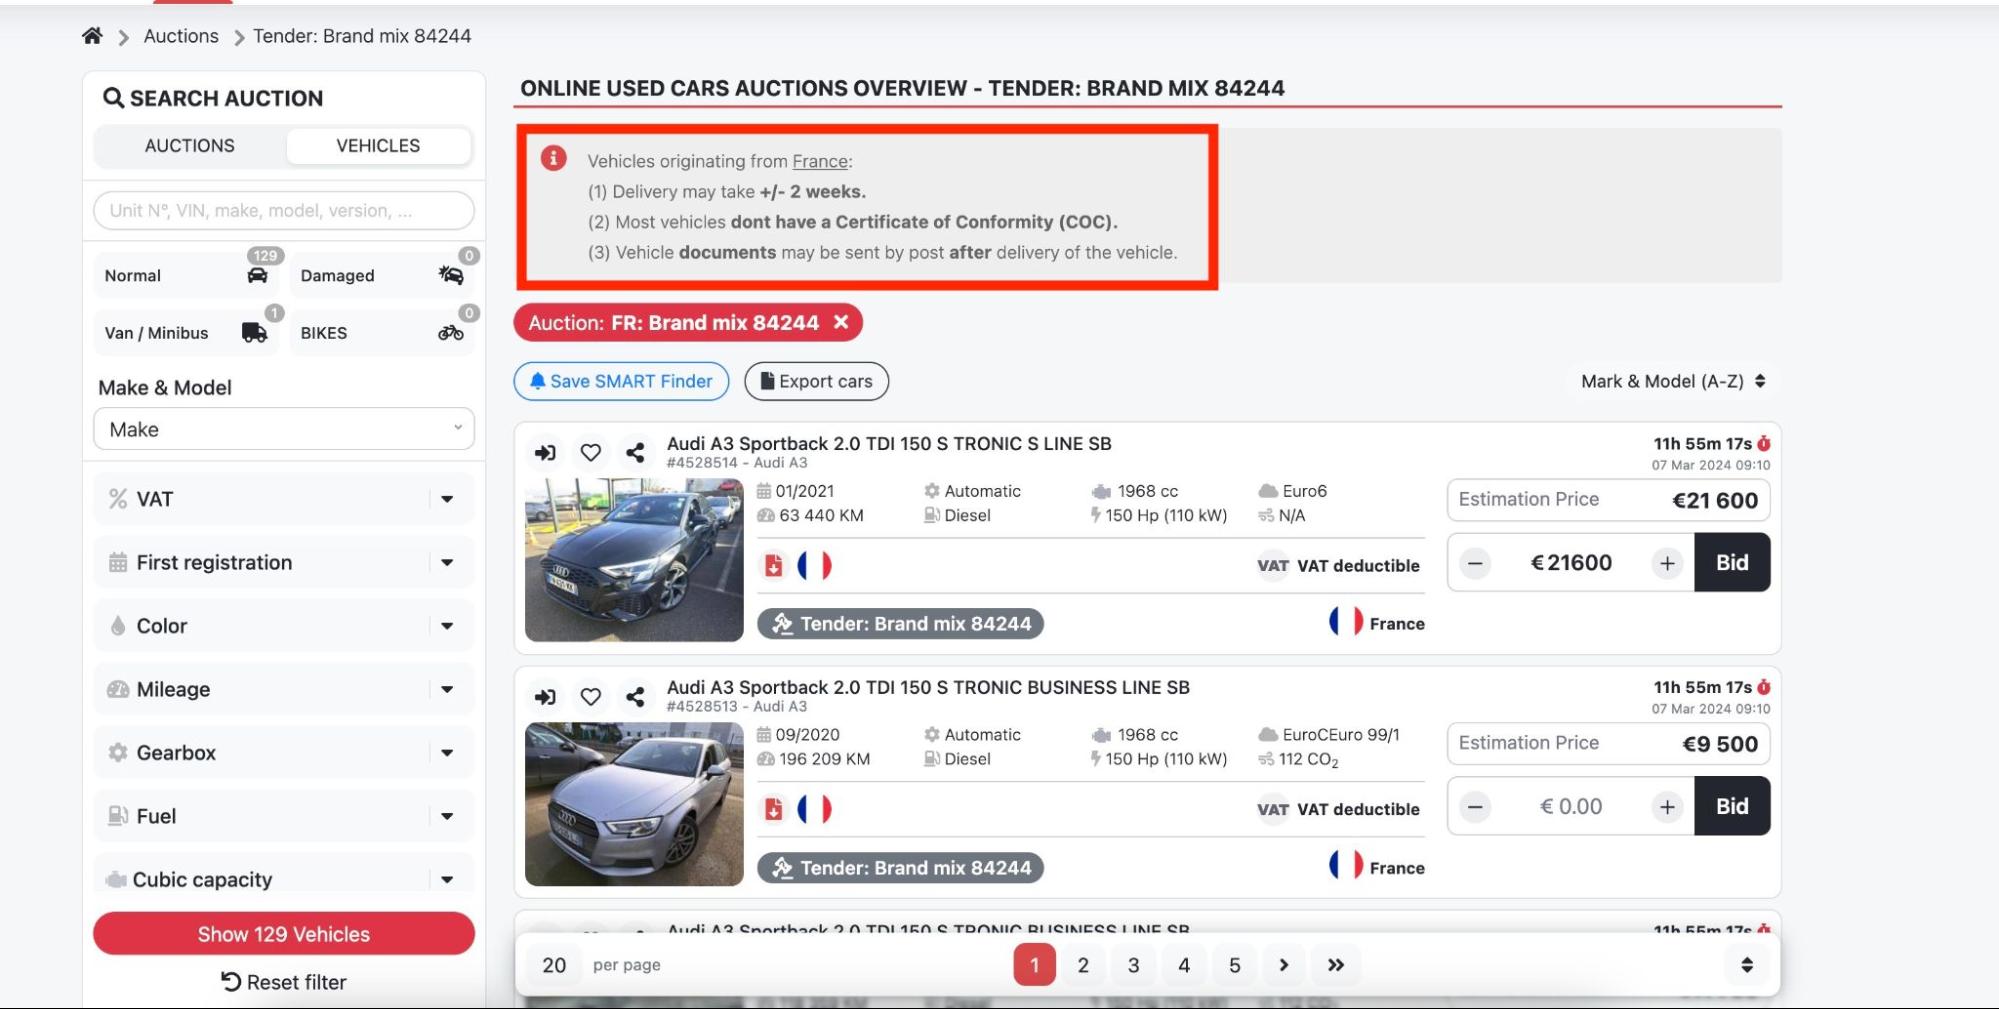 képernyőkép, amely a jármű adatait mutatja az ecarstrade aukciókon